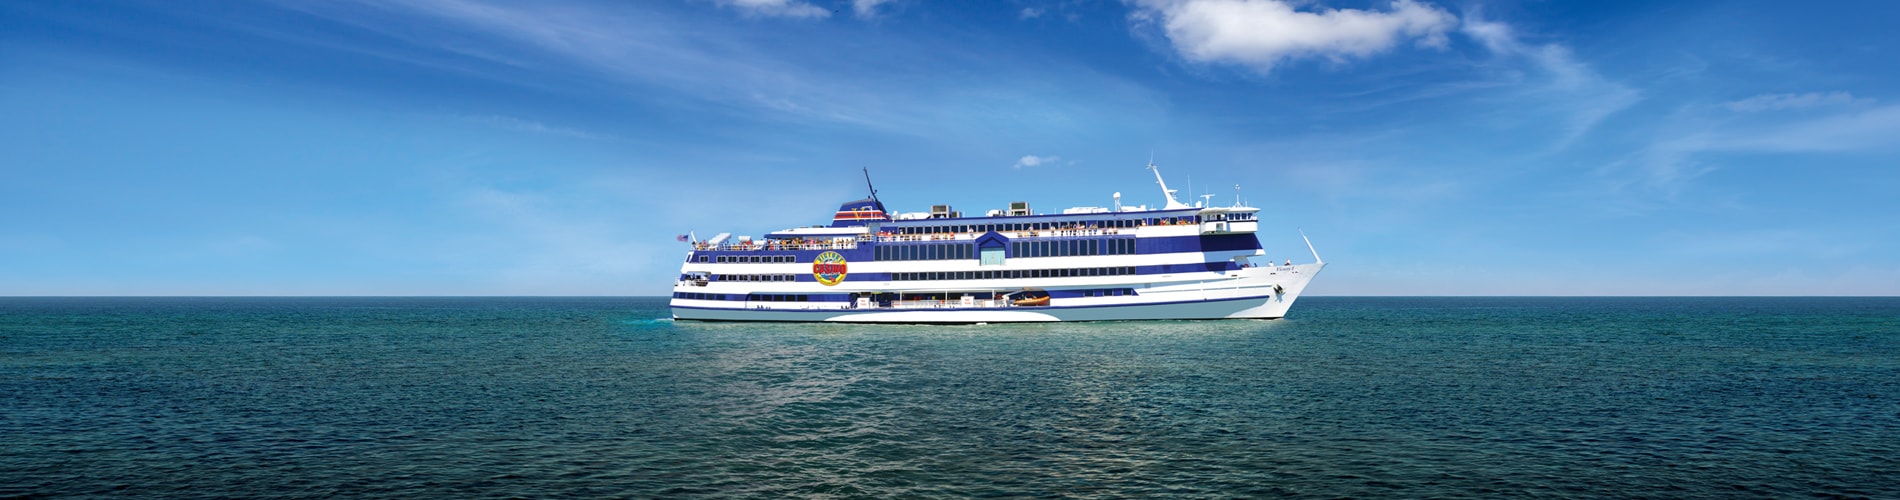 Victory Casino Cruises passenger ship